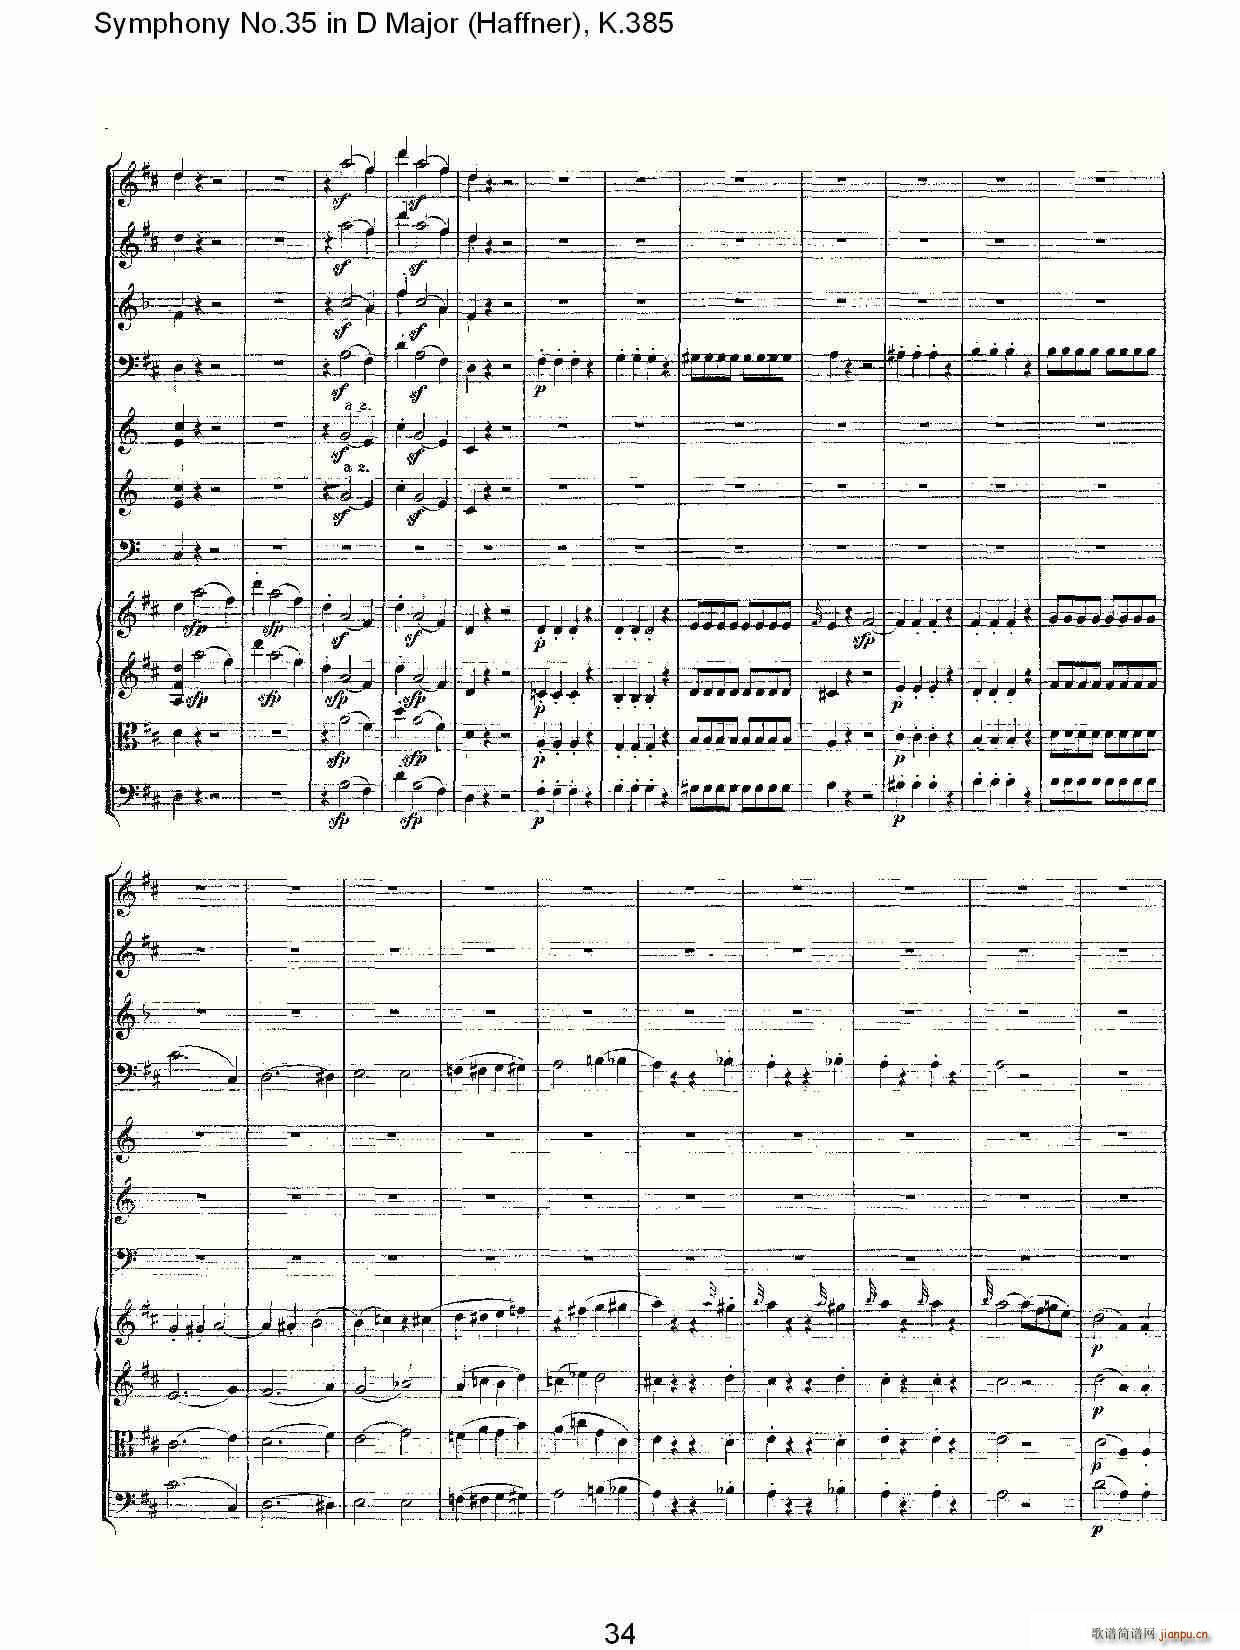 Symphony No.35 in D Major, K.385(ʮּ)34